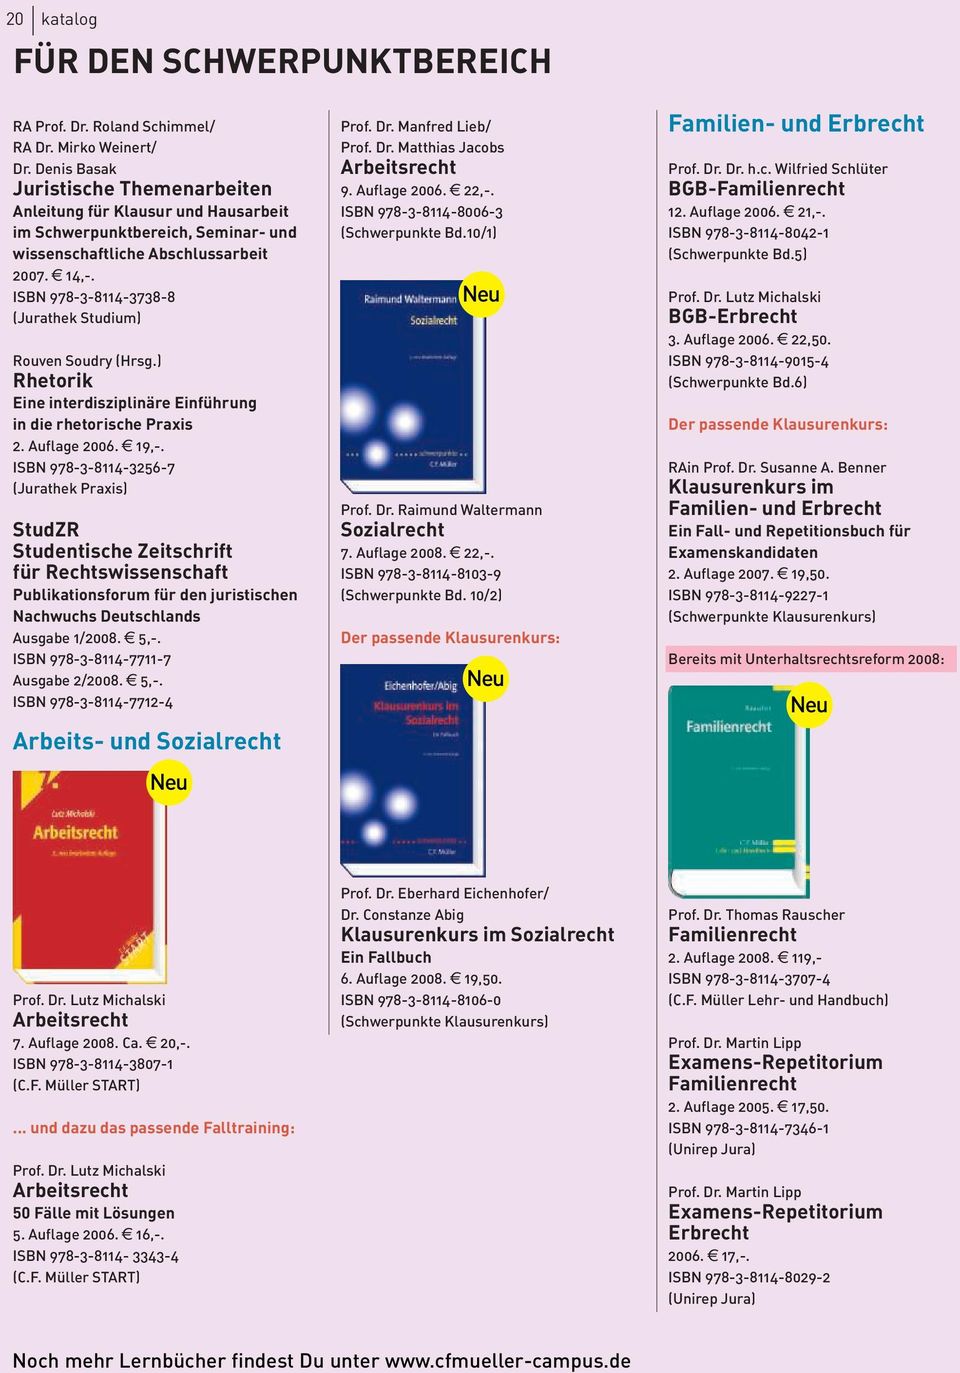 ISBN 978-3-8114-3738-8 (Jurathek Studium) Rouven Soudry (Hrsg.) Rhetorik Eine interdisziplinäre Einführung in die rhetorische Praxis 2. Auflage 2006. e 19,-.